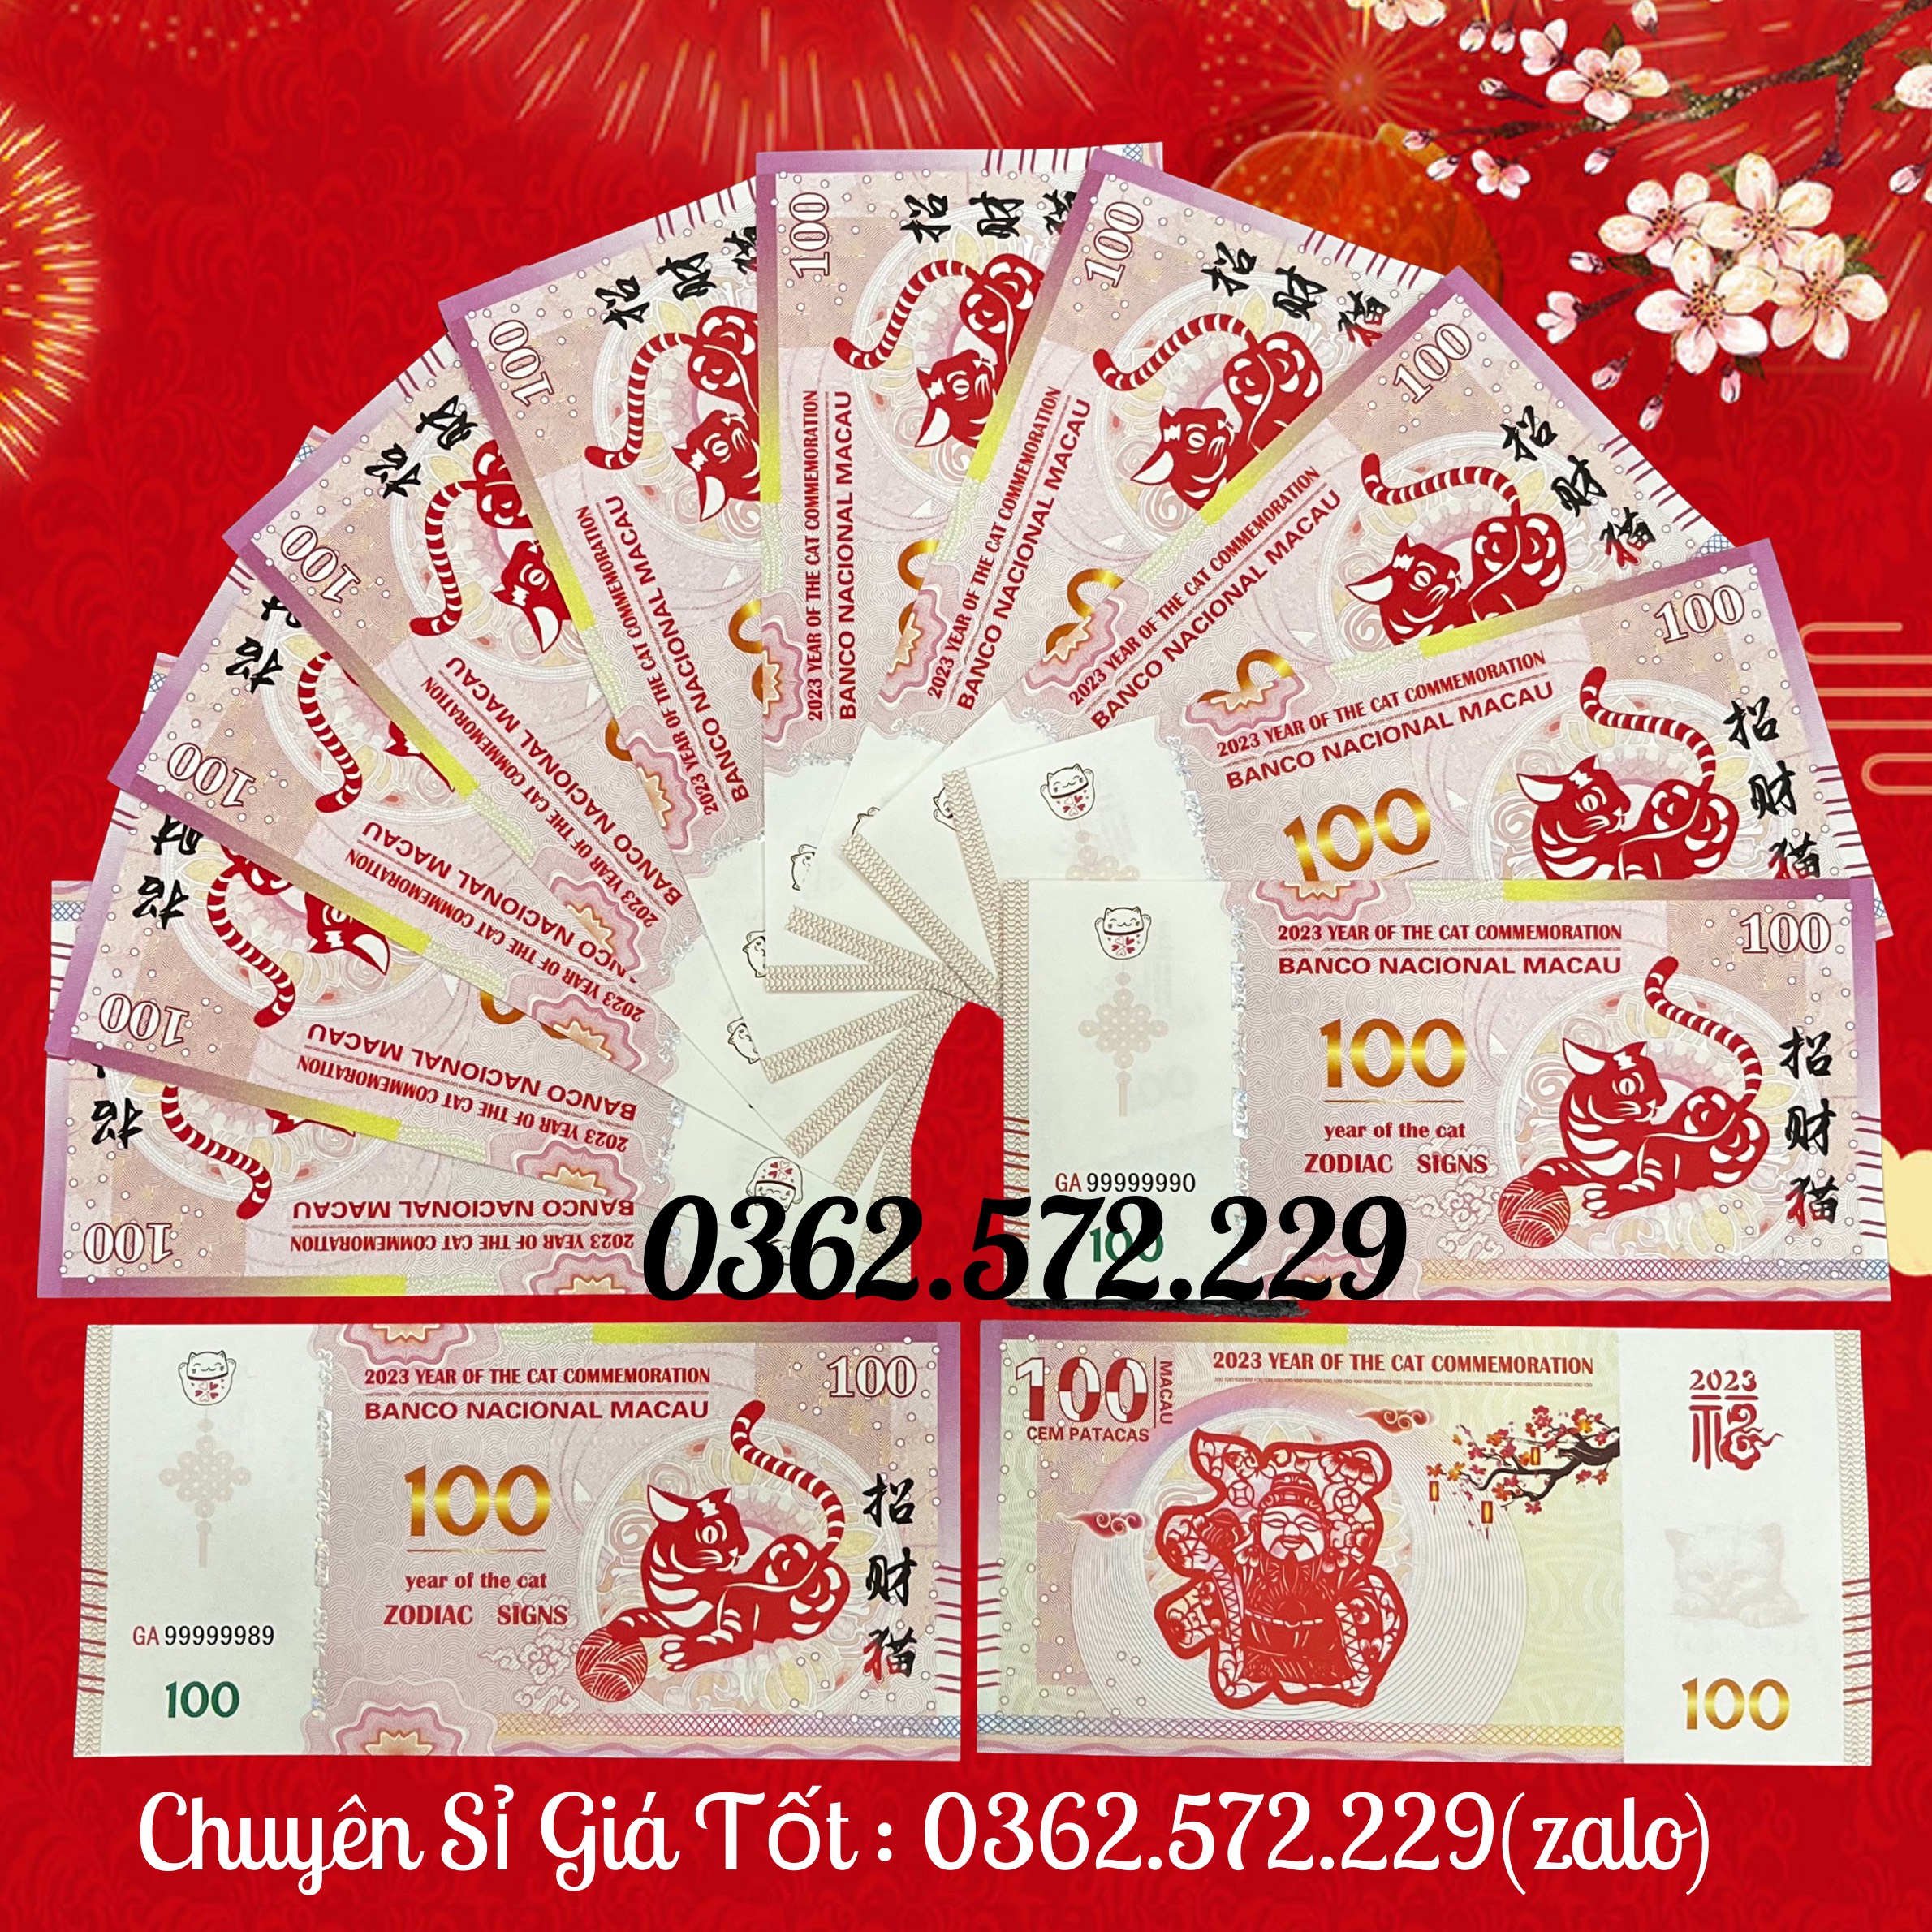 Combo 15 Tờ Tiền Lì Xì Tết May Mắn Hình con Mèo Macao lưu niệm năm 2023 mệnh giá 100 Patacas Macau